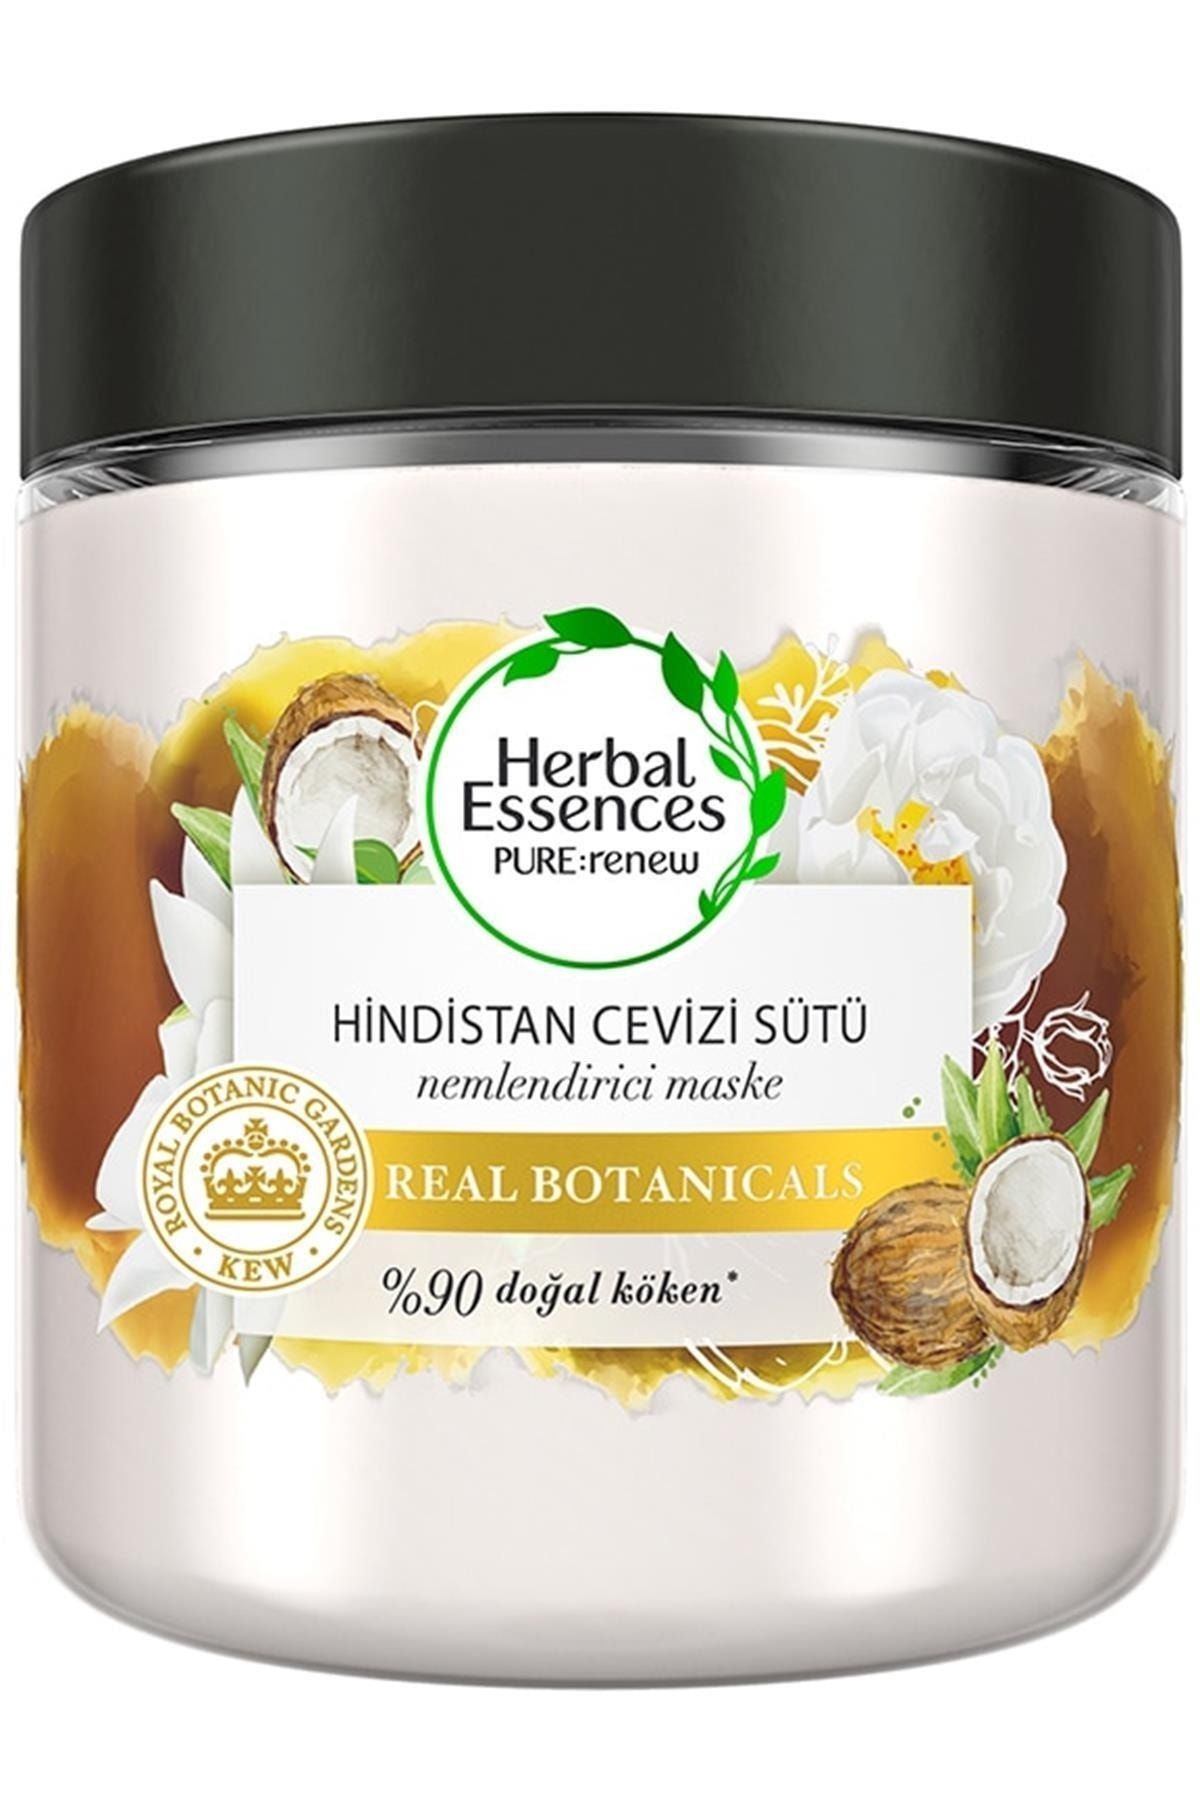 Herbal Essences Hindistan Cevizi Sütü Yatıştırıcı Maske 250 ml